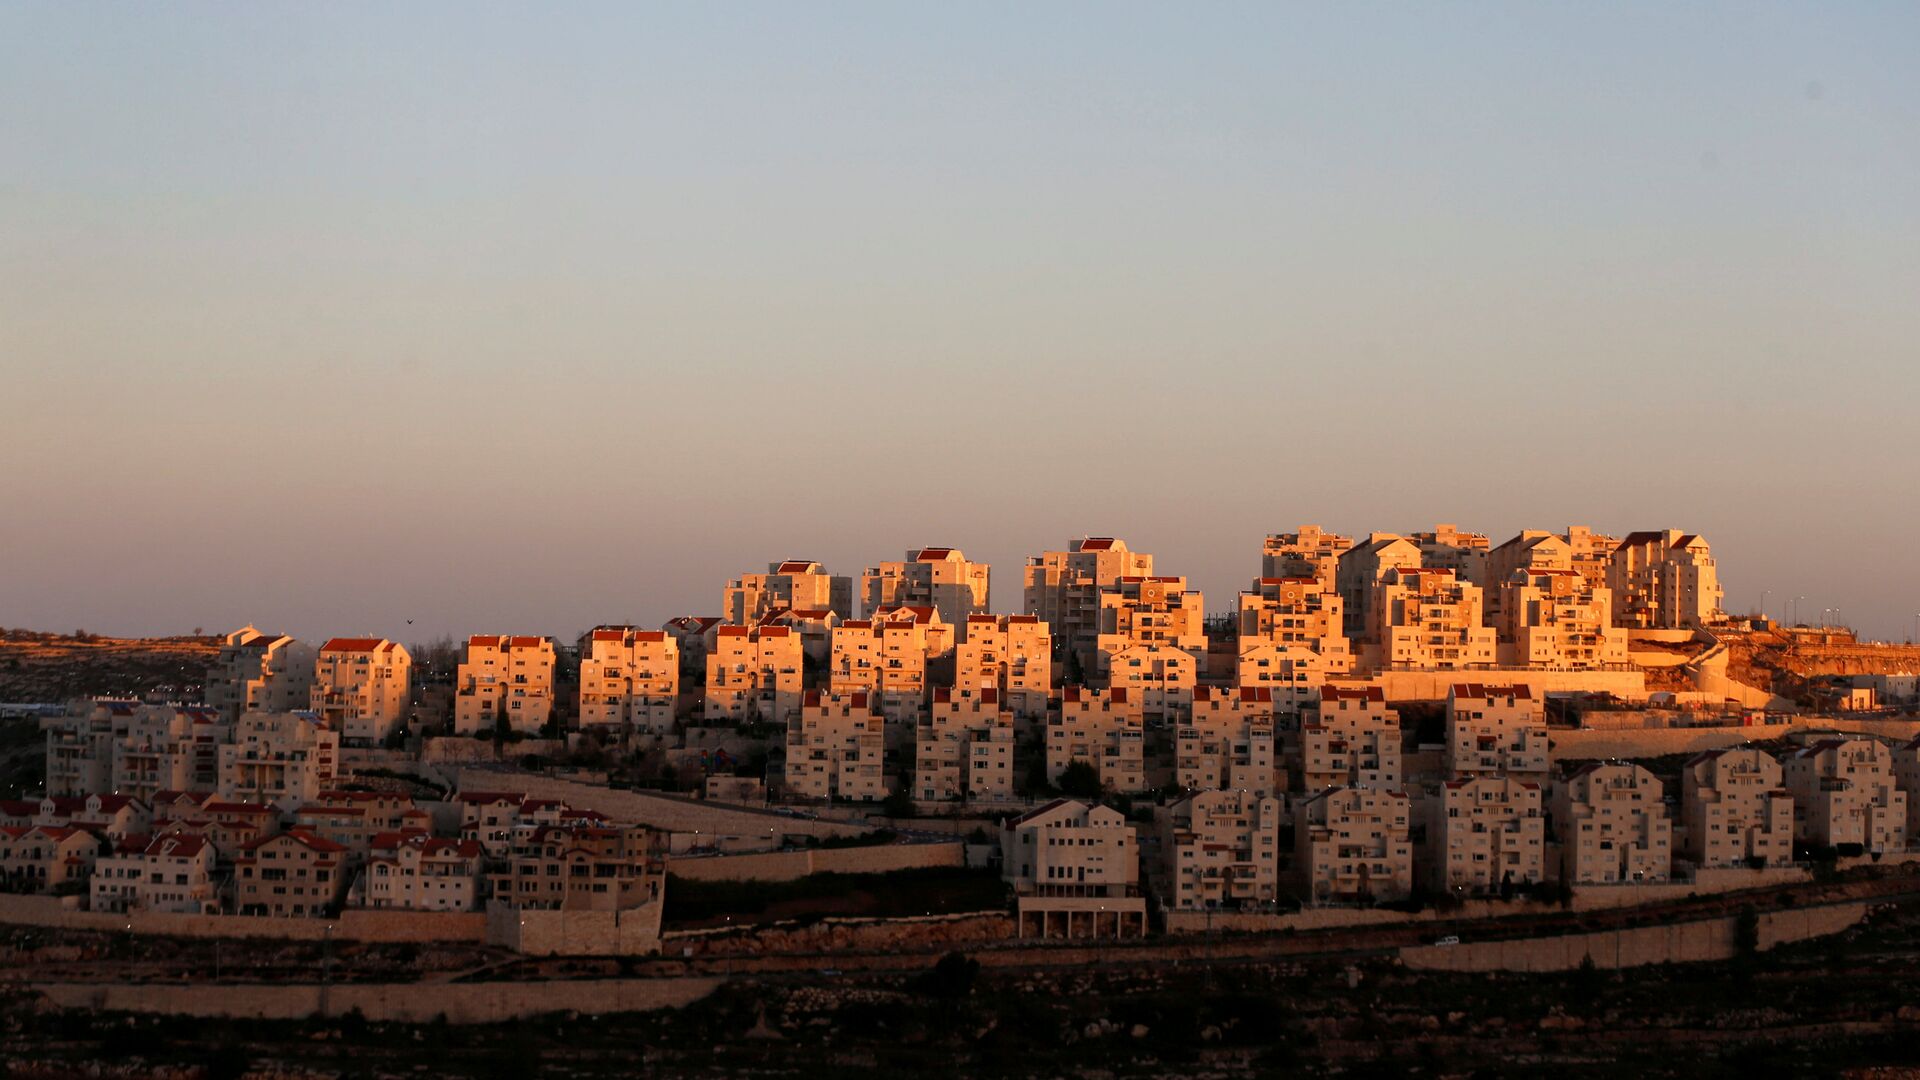 Las casas del asentamiento israelí de Efrat, en Cisjordania - Sputnik Mundo, 1920, 07.12.2021